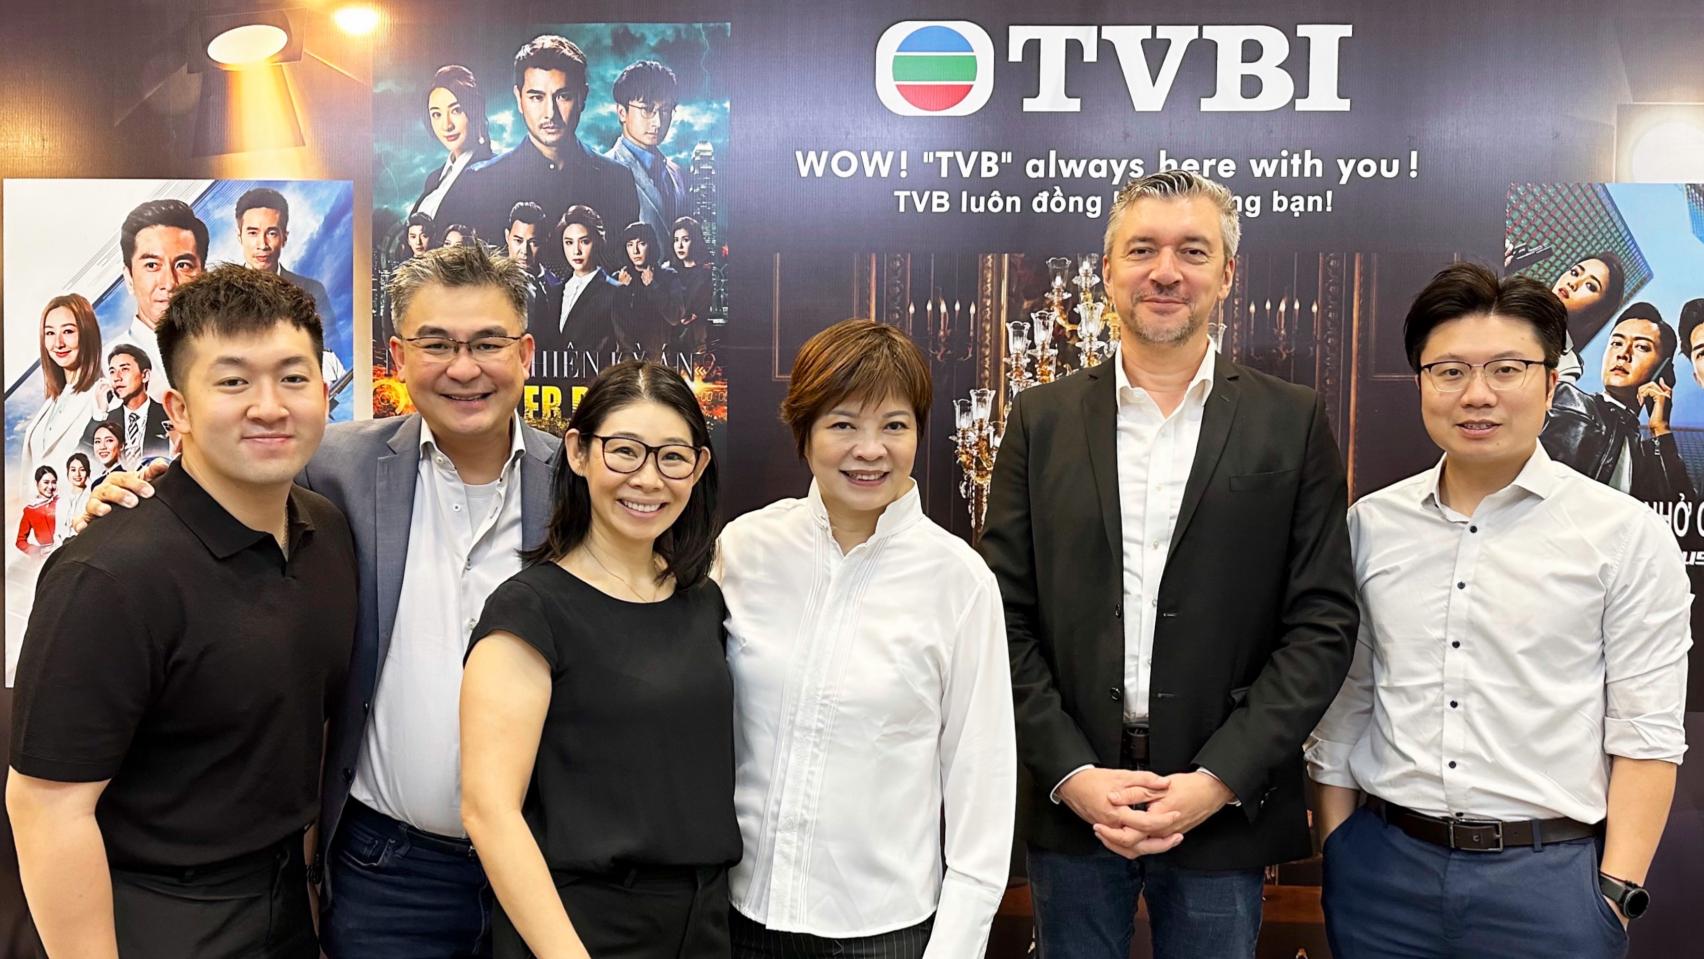 International 1 POPS Worldwide ký hợp tác TVB International mang phim truyền hình đặc sắc về Việt Nam